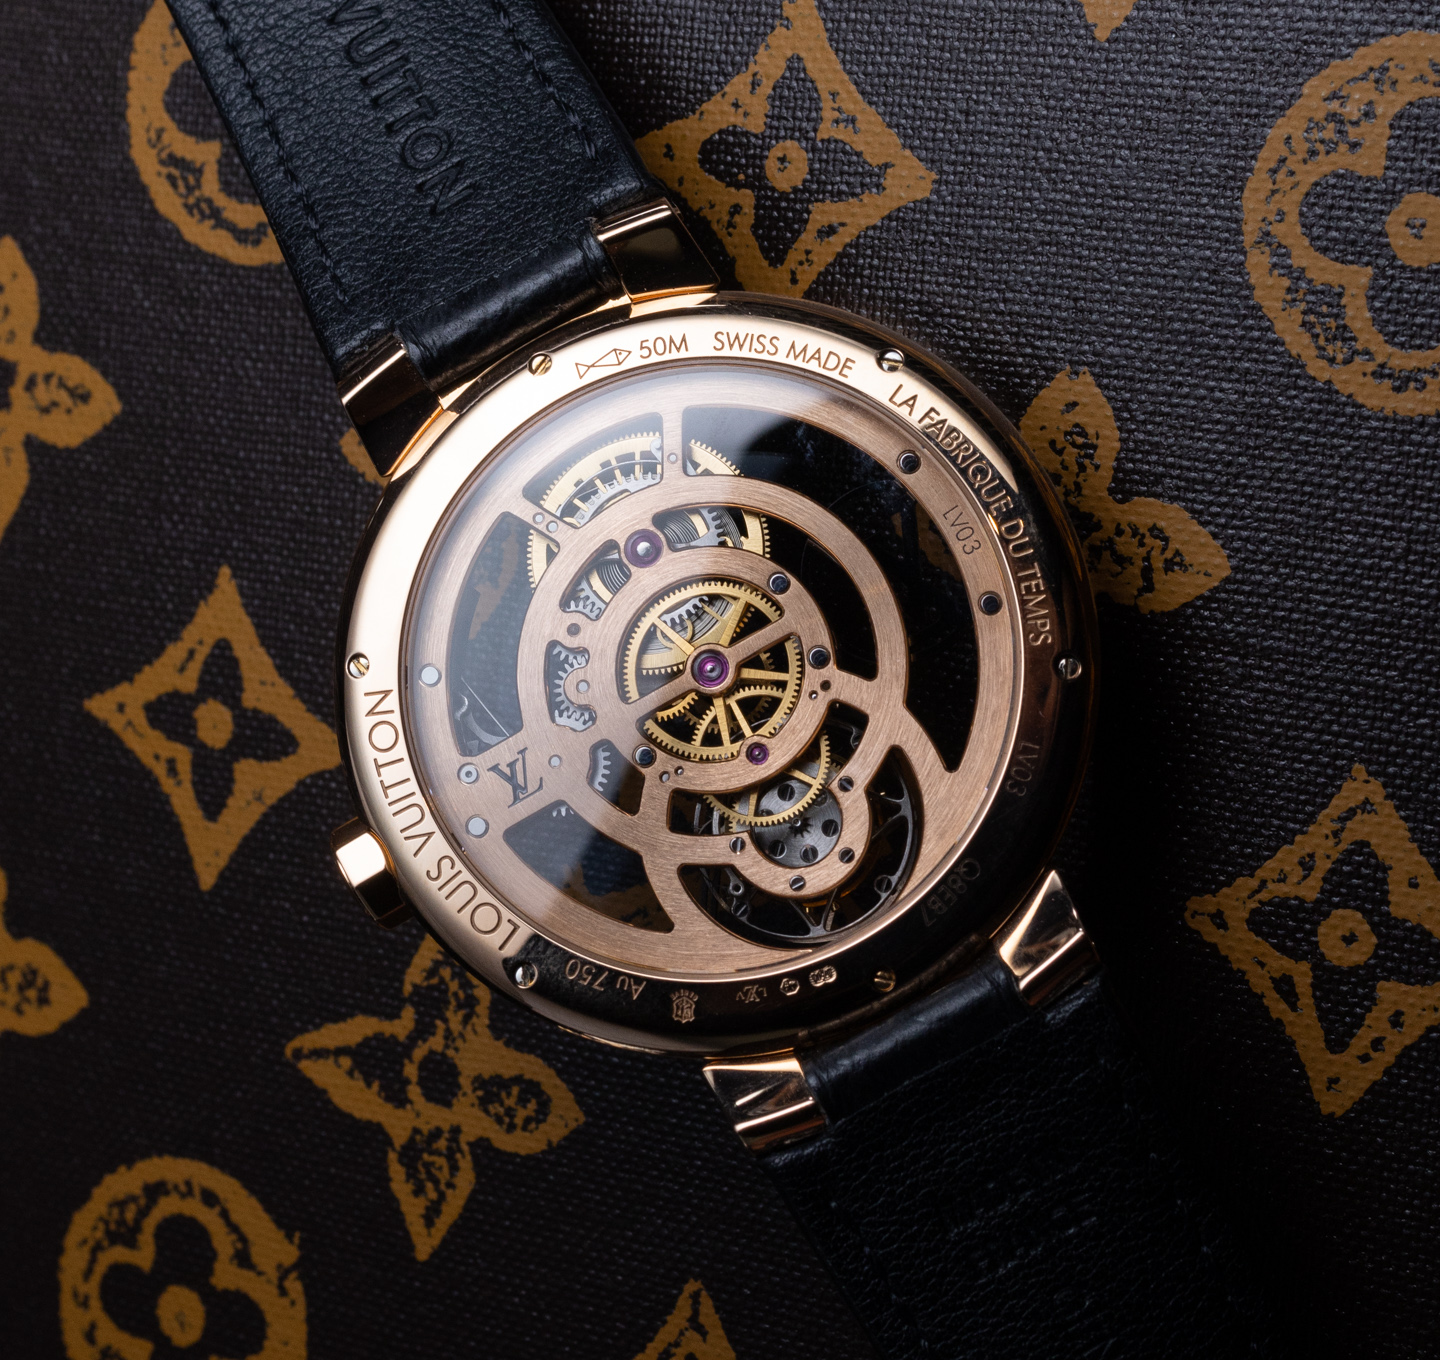 Louis Vuitton's Monogram Watch Trunk is now in Titanium and Ruthenium